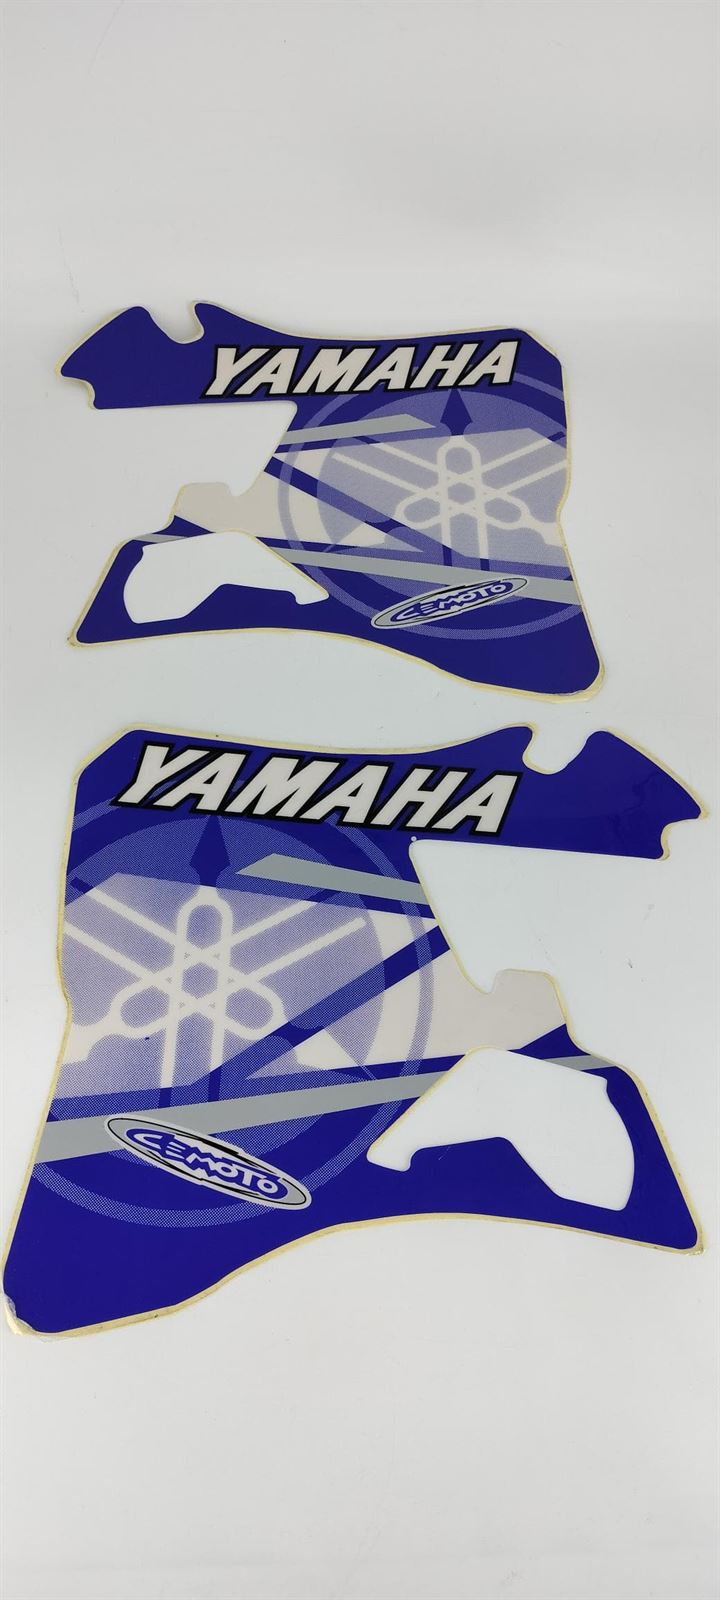 Kit de adhesivos Cemoto para Yamaha YZ 125/250 del '96 al '01 - Imagen 1